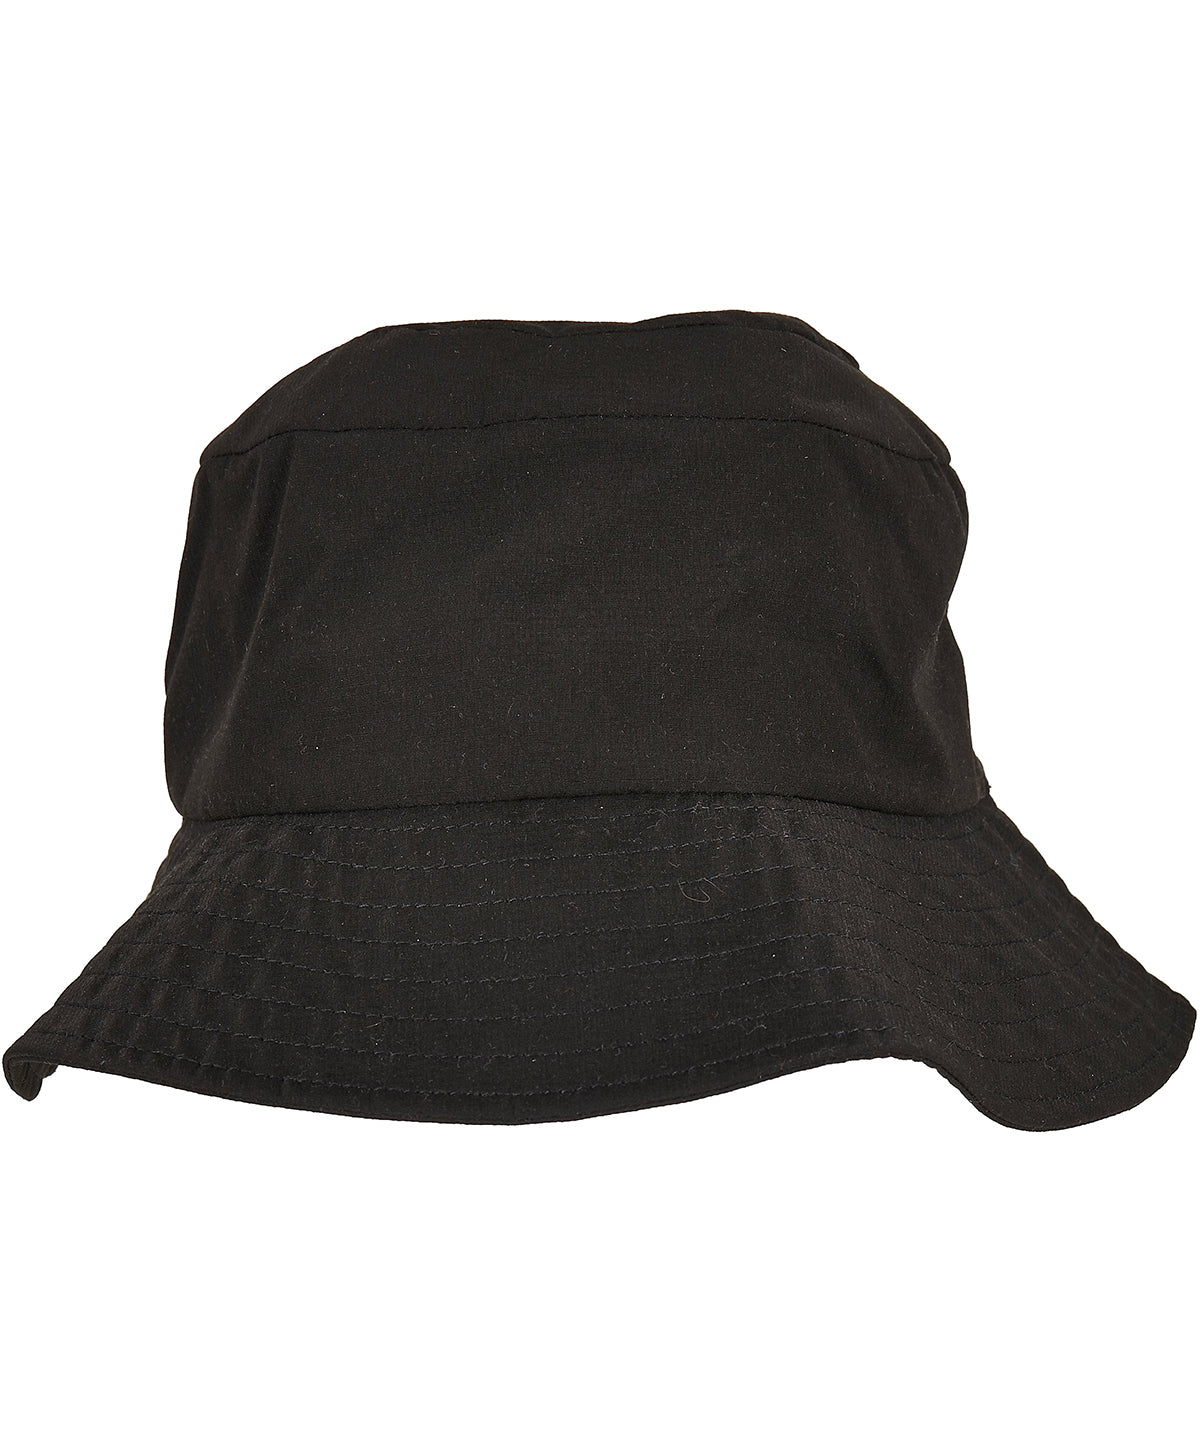 Húfur - Elastic Adjuster Bucket Hat